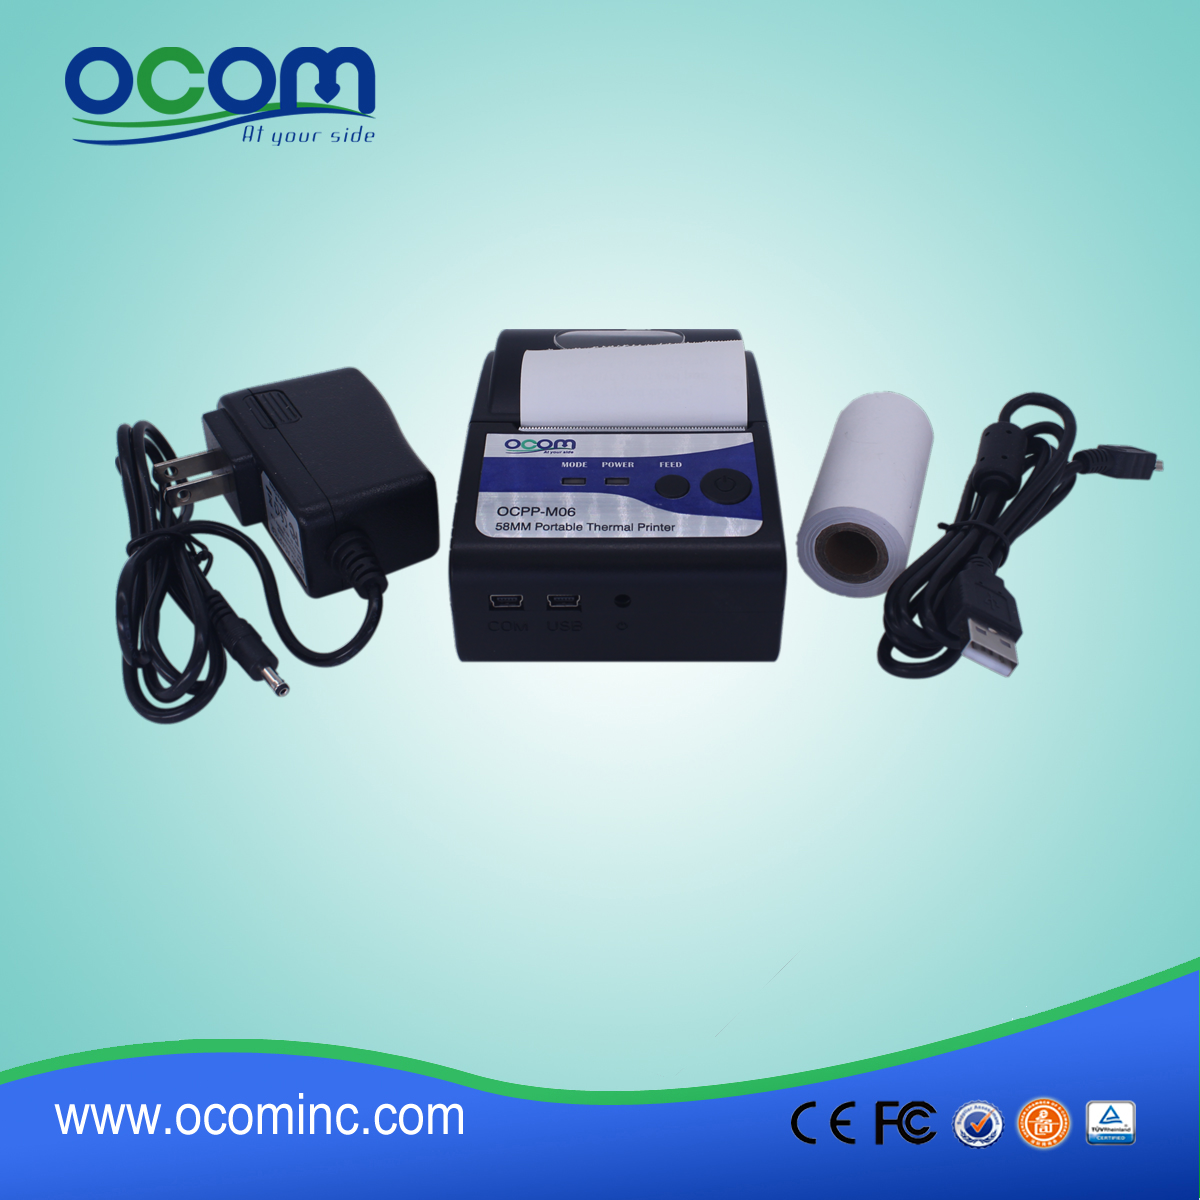 (OCPP-M06) OCOM Hot verkoop van Android-printer, printer USB, RS232 printer